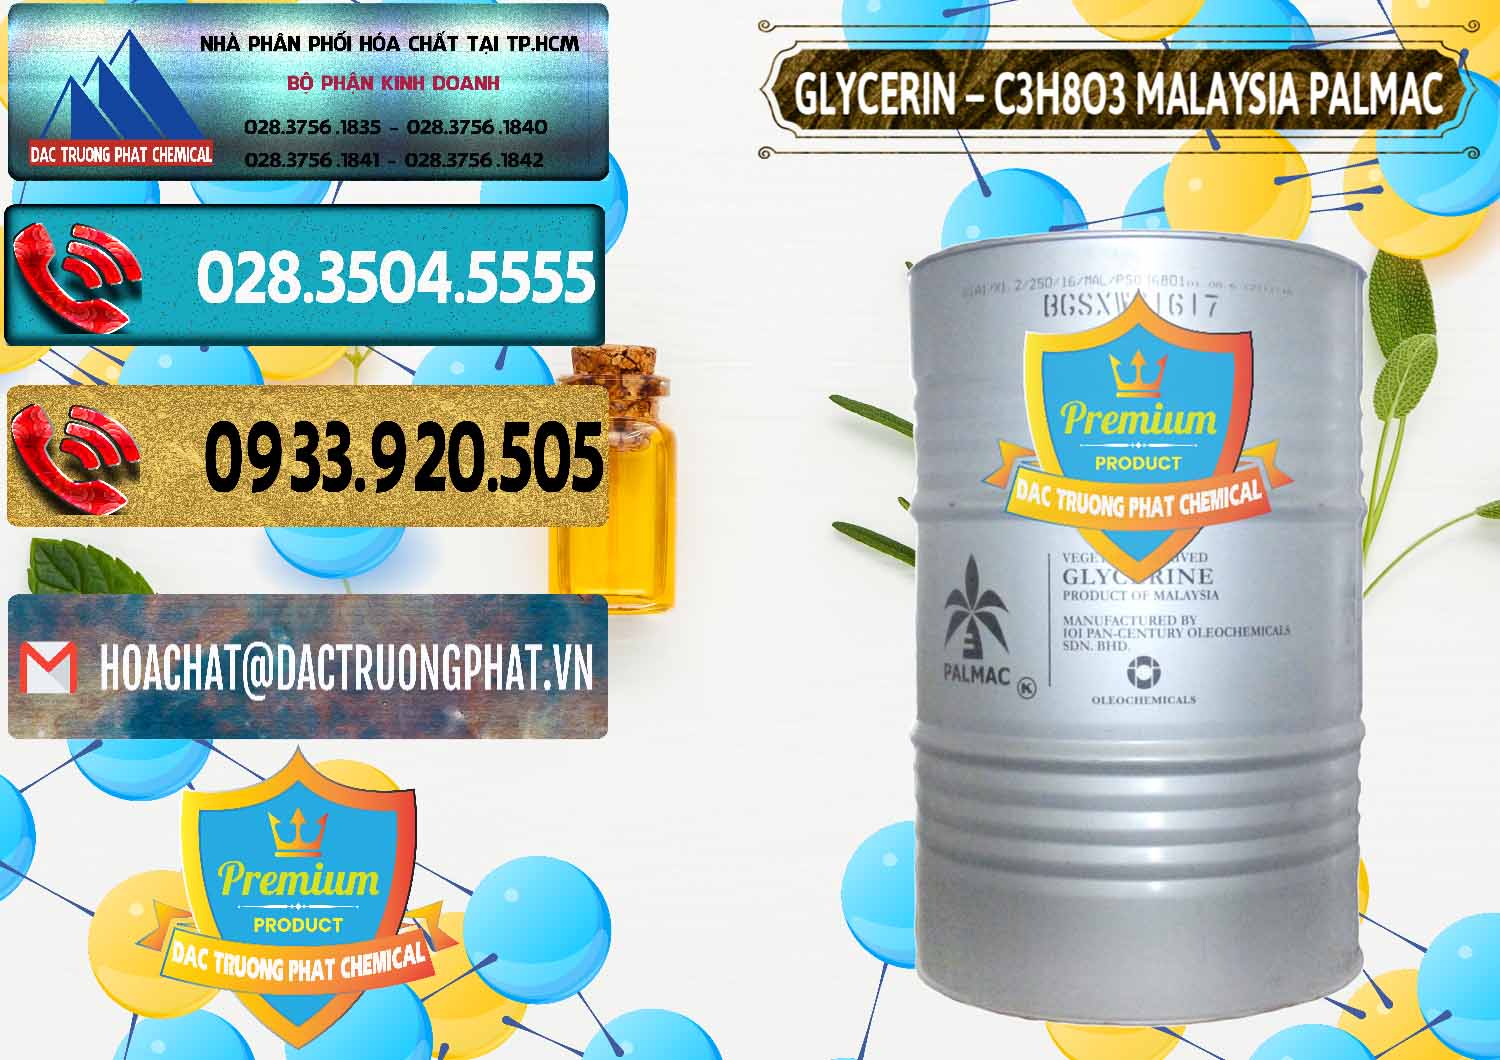 Chuyên bán & cung ứng Glycerin – C3H8O3 99.7% Malaysia Palmac - 0067 - Công ty chuyên cung cấp ( nhập khẩu ) hóa chất tại TP.HCM - hoachatdetnhuom.com